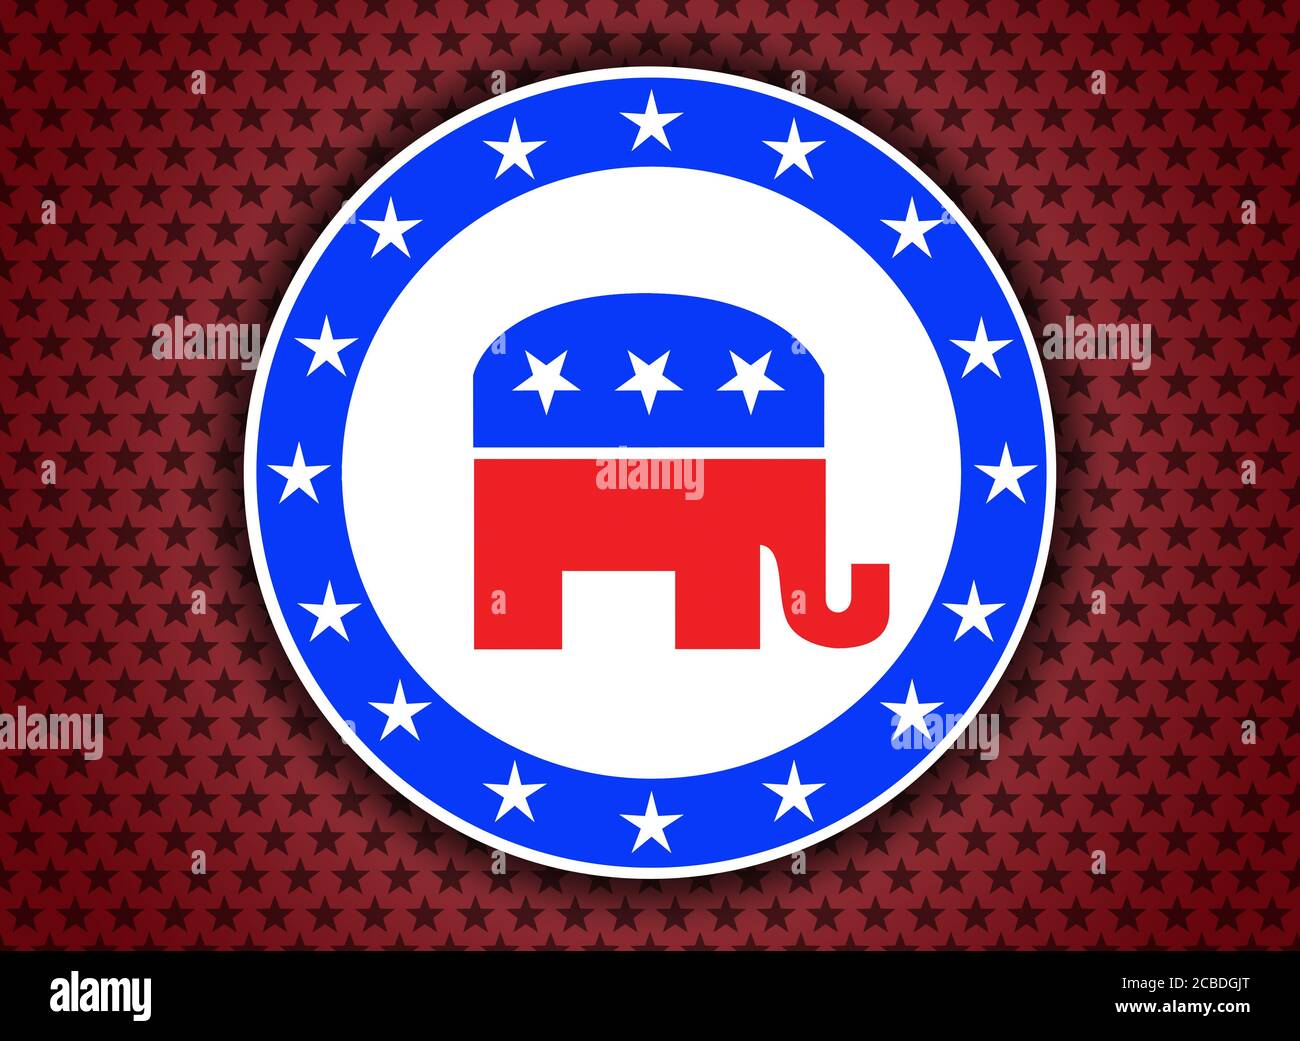 Republican Vote Button Stock Photo